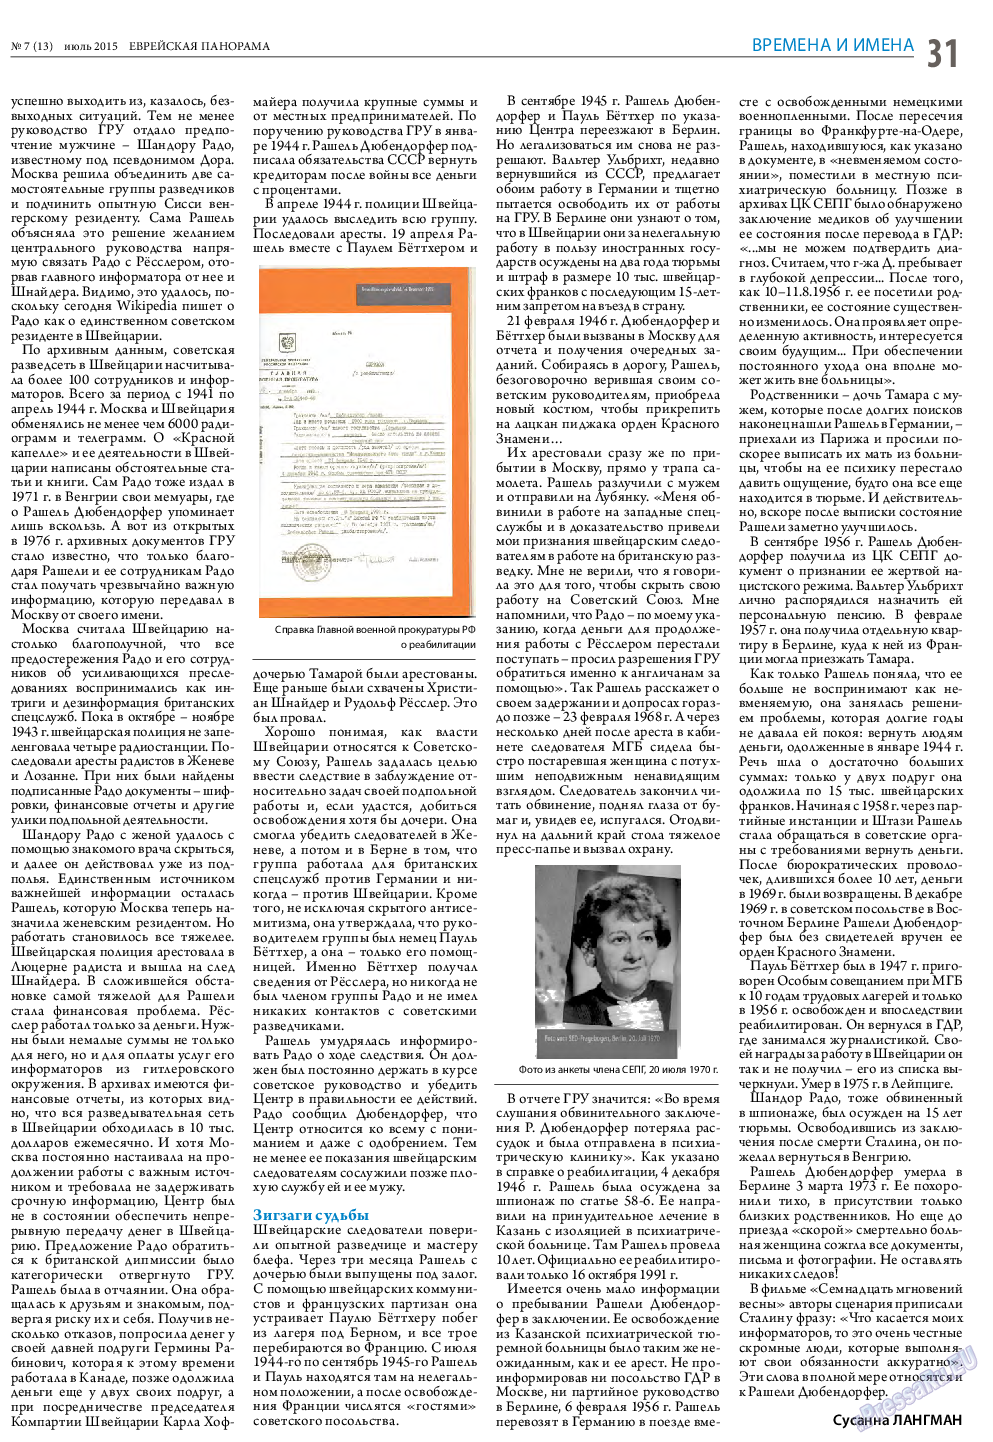 Еврейская панорама (газета). 2015 год, номер 7, стр. 31